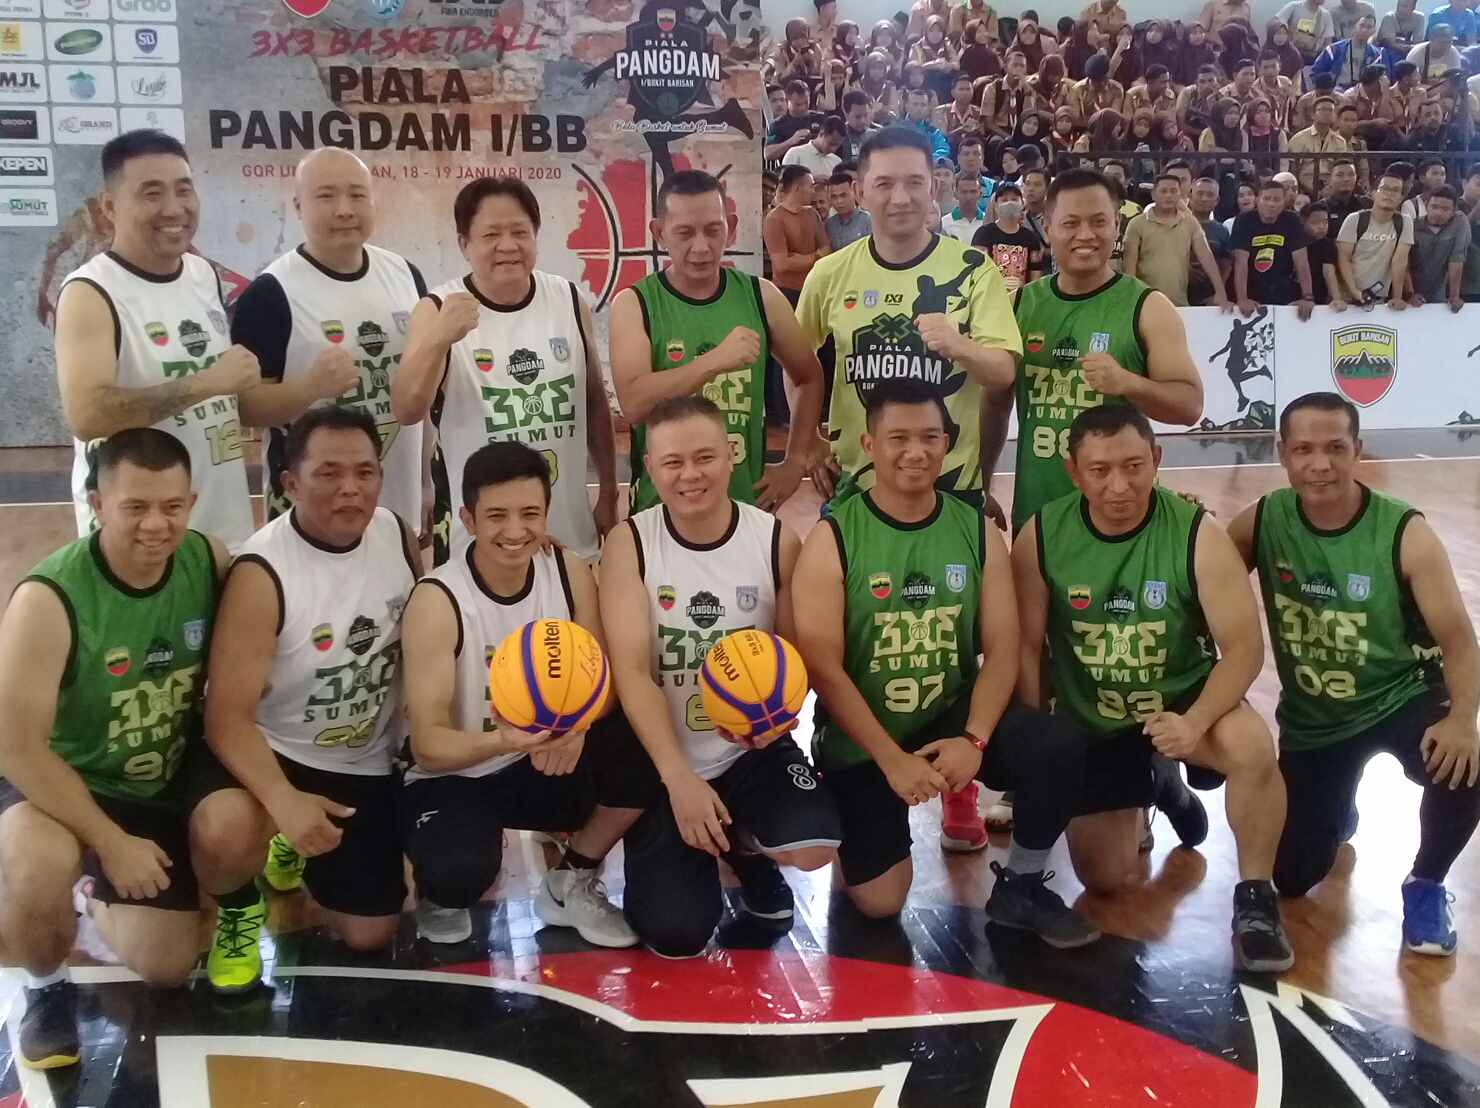 105 Pebasket Ikuti Turnamen Kejuaraan Bola Basket 3 on 3 Piala Pangdam I/BB